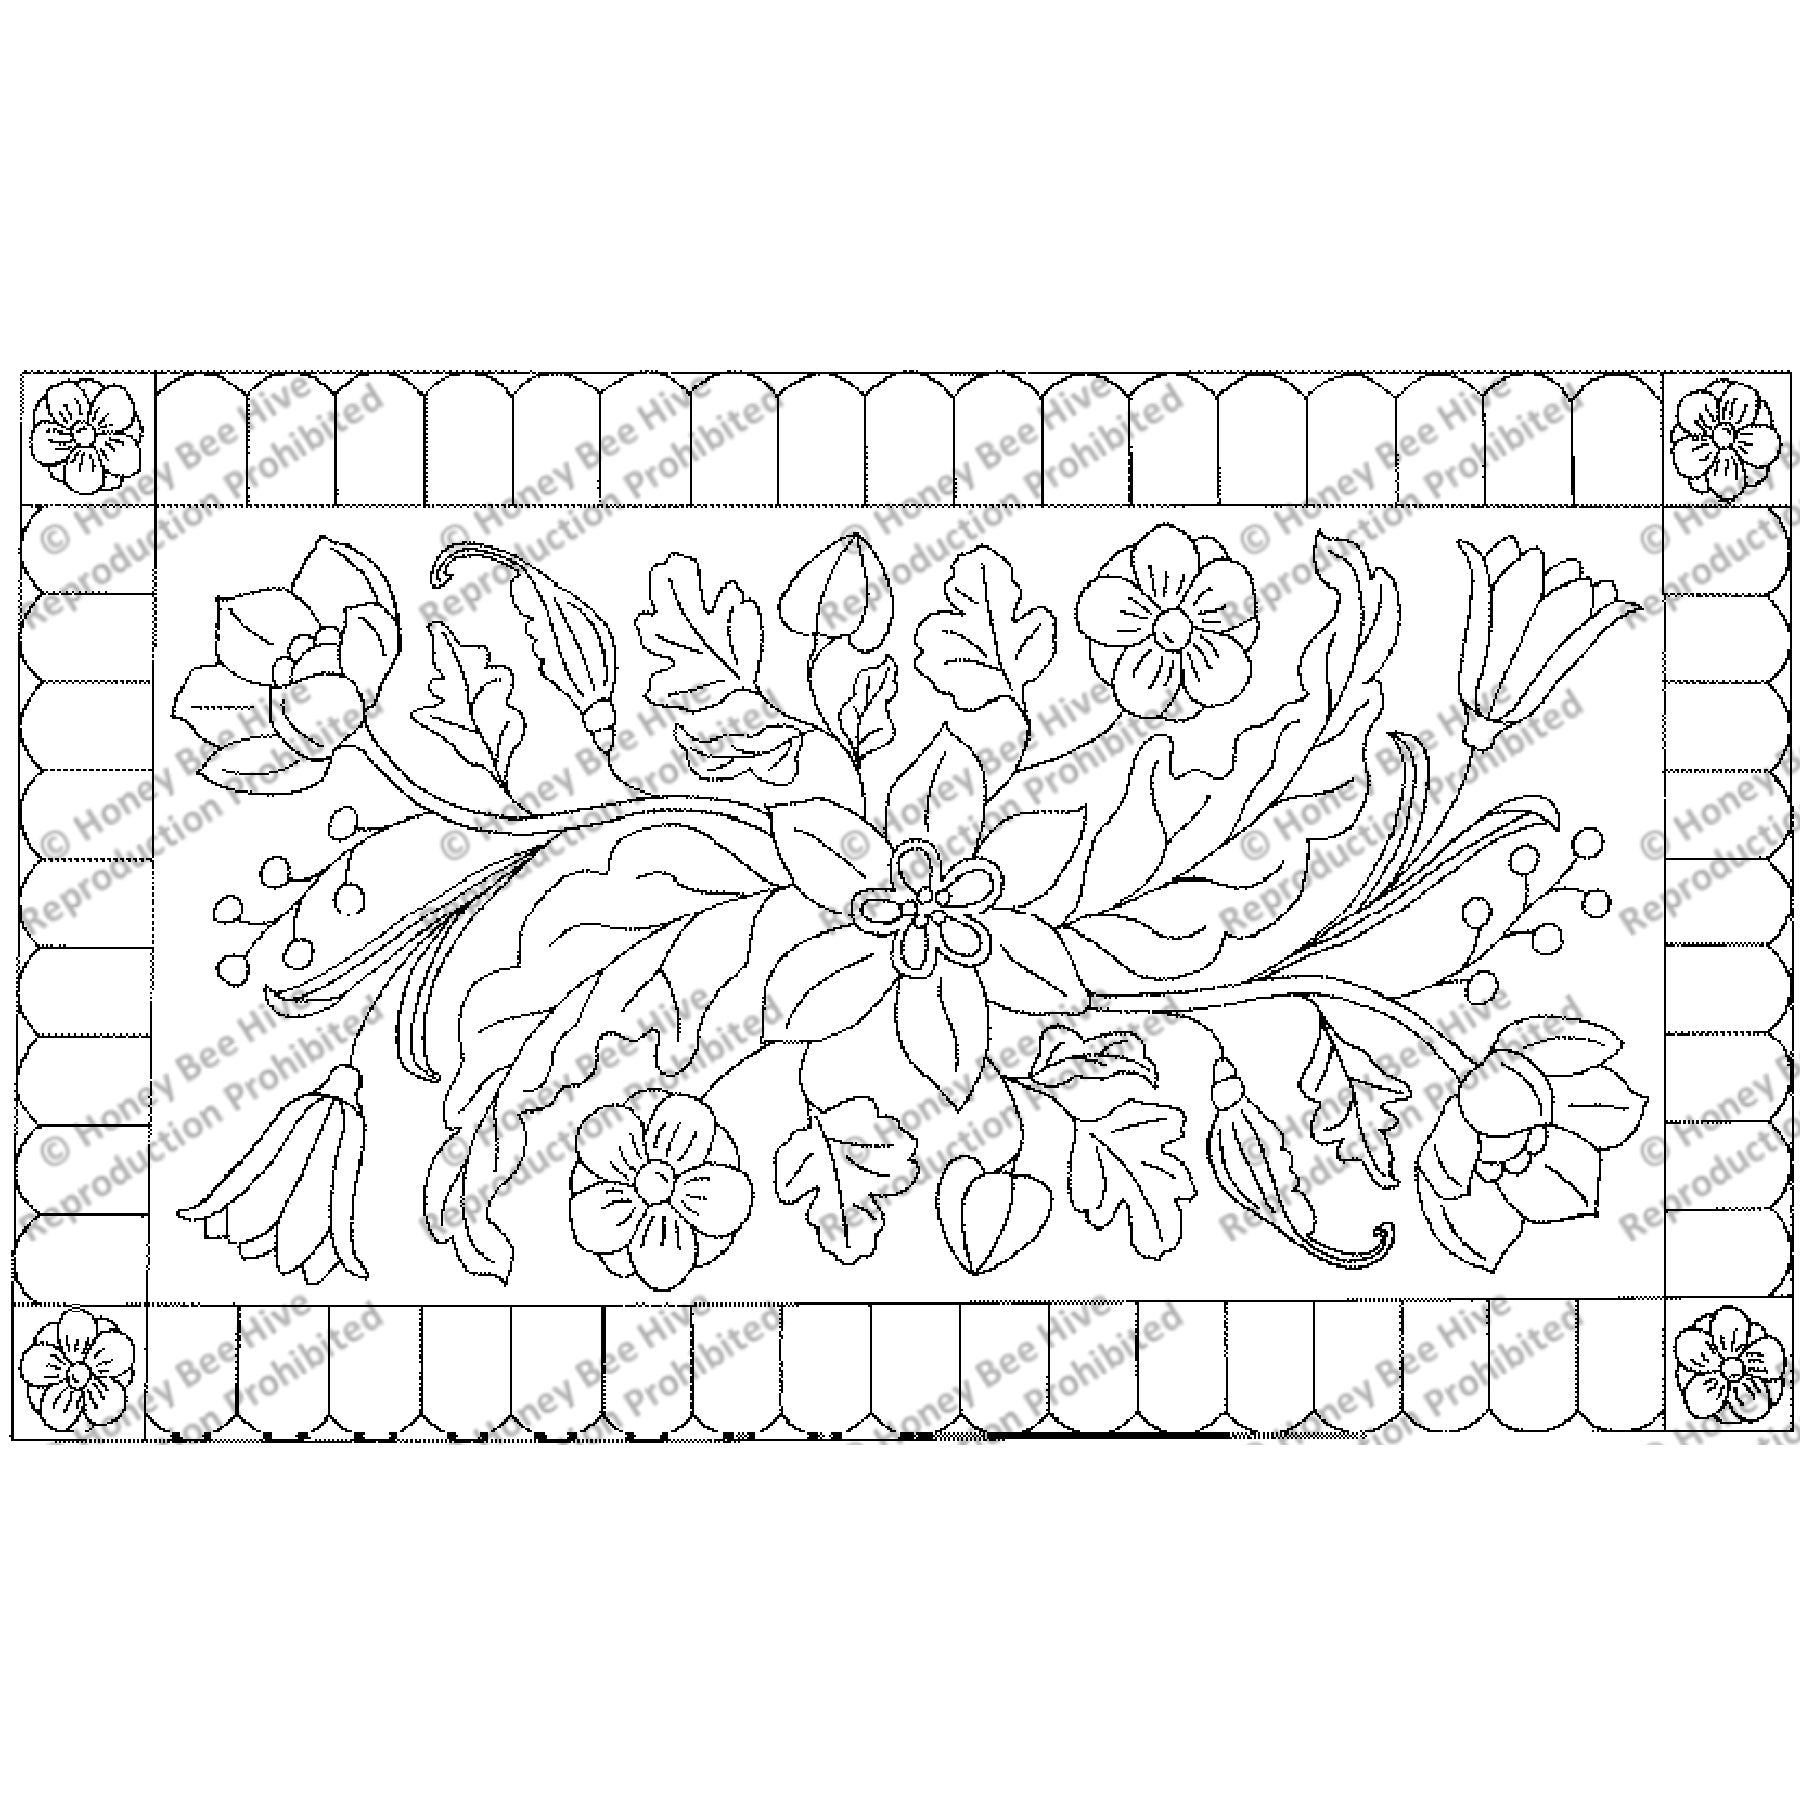 Antique Floral, rug hooking pattern